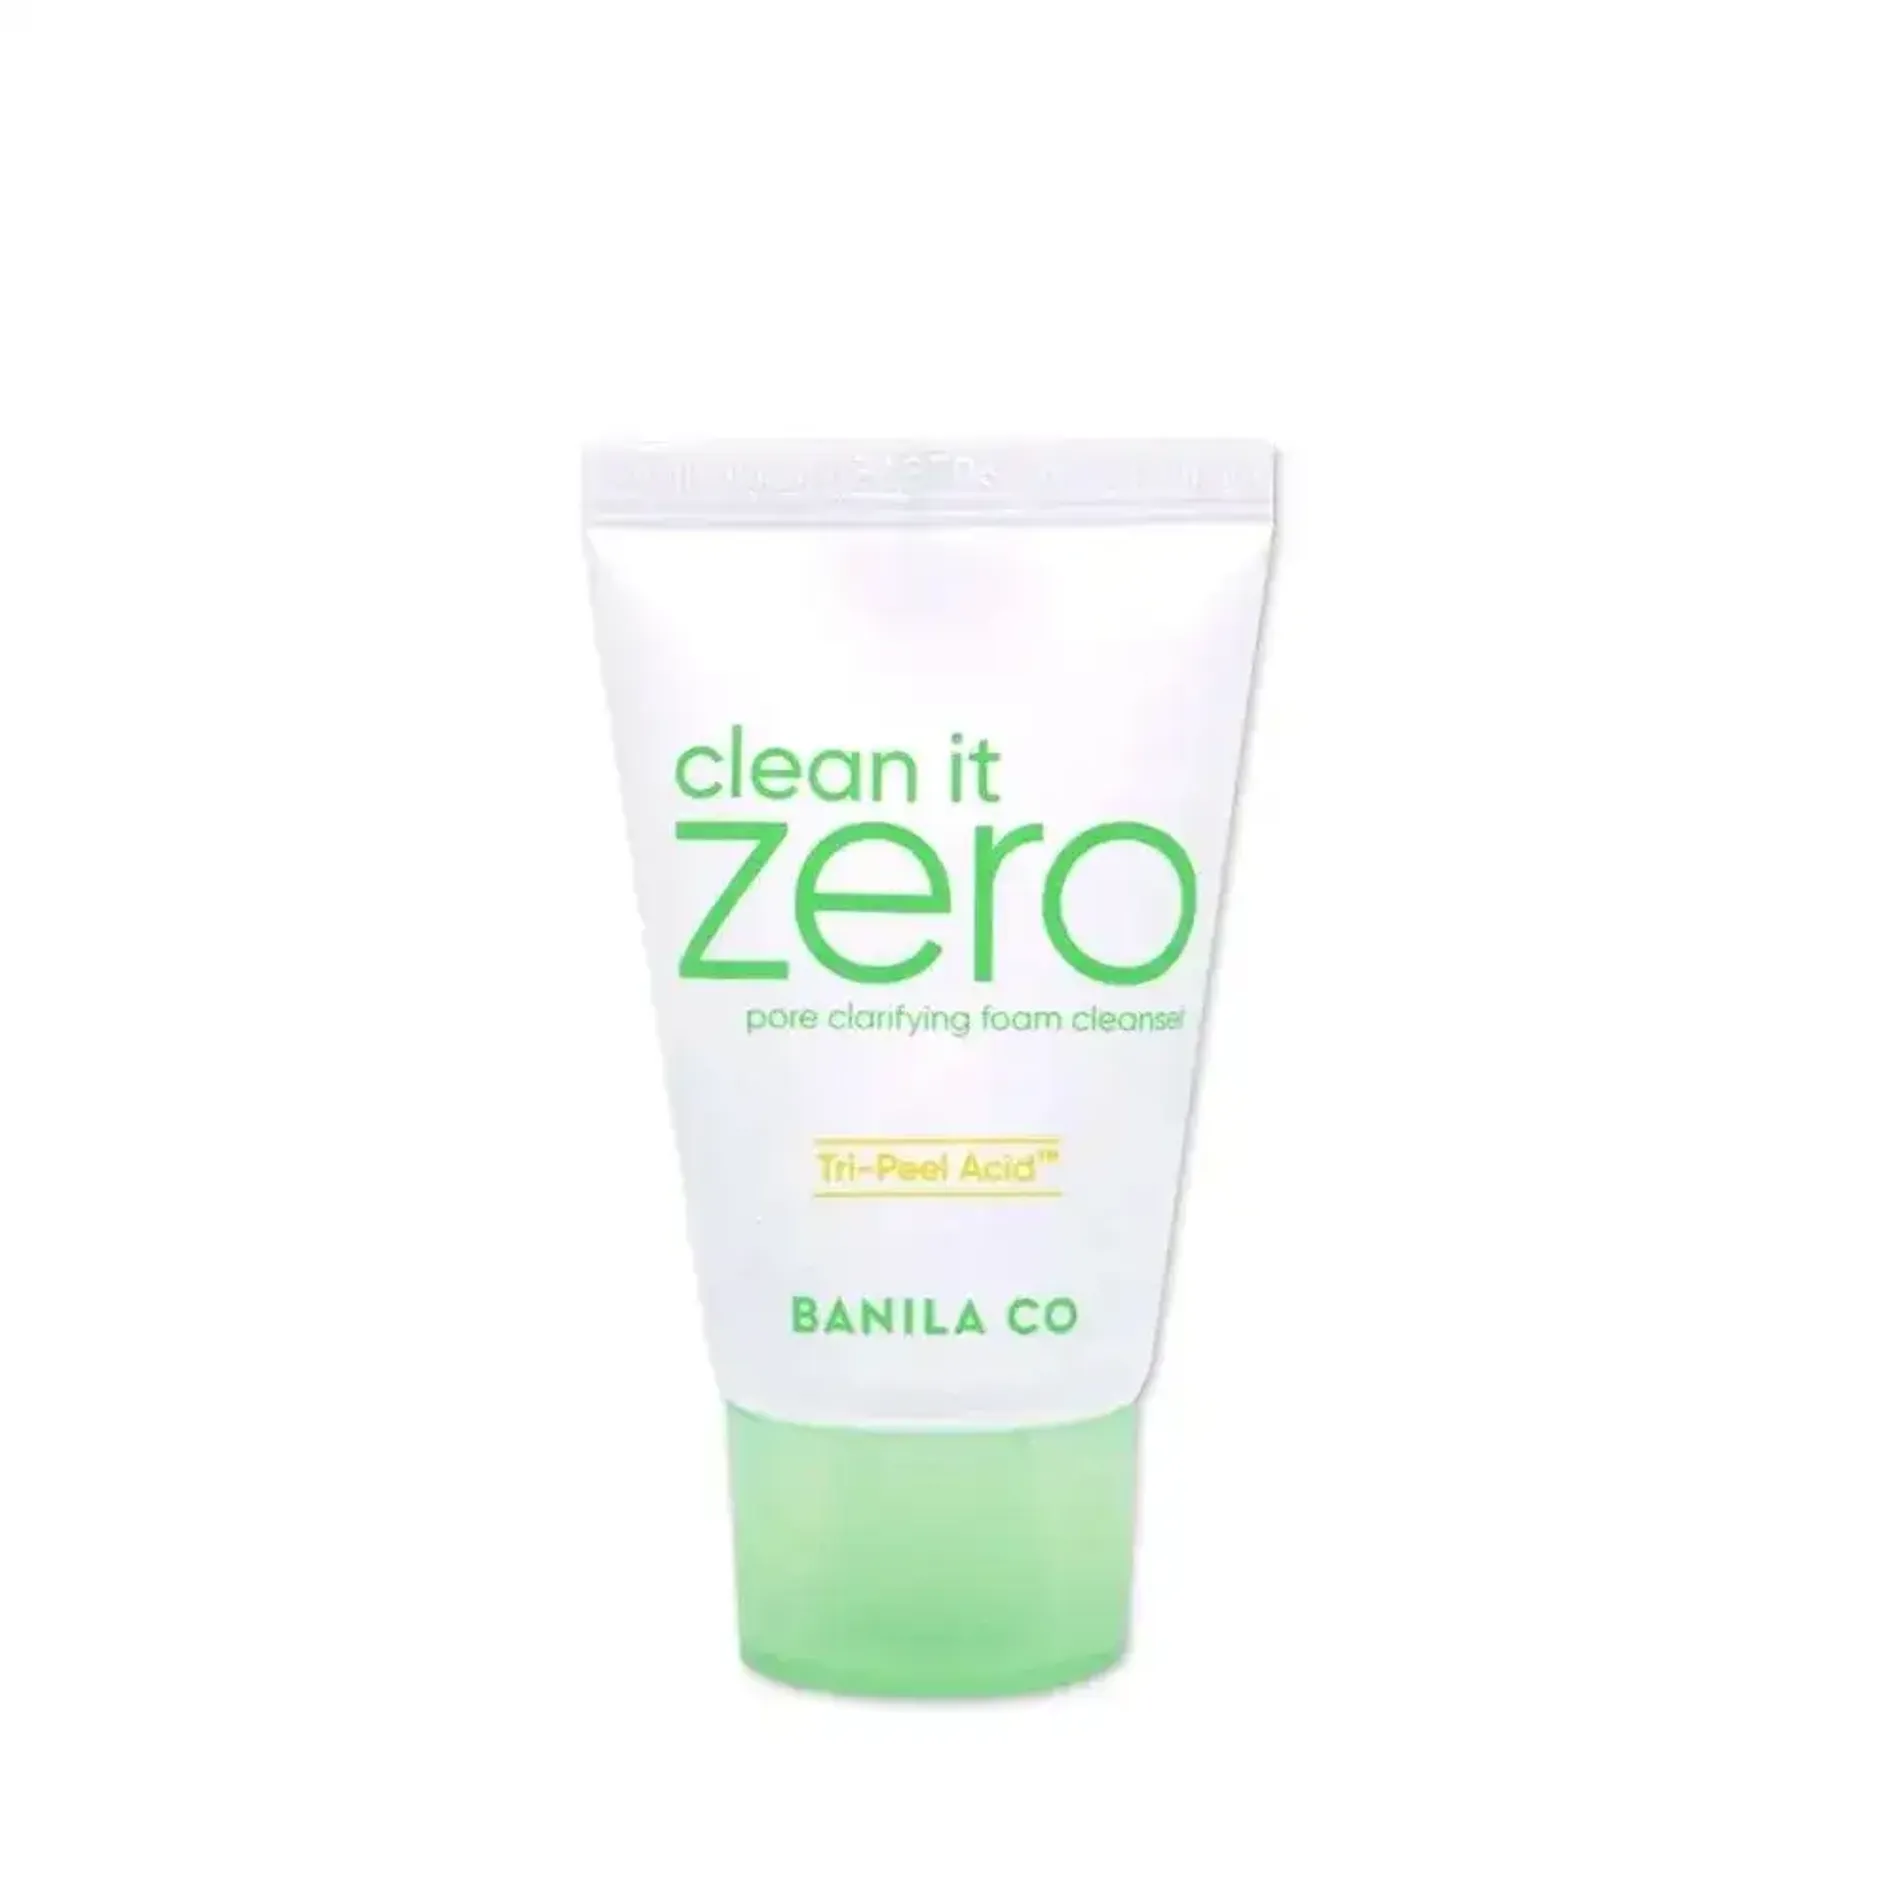 sua-rua-mat-banila-co-clean-it-zero-pore-clarifying-foam-cleanser-30ml-1